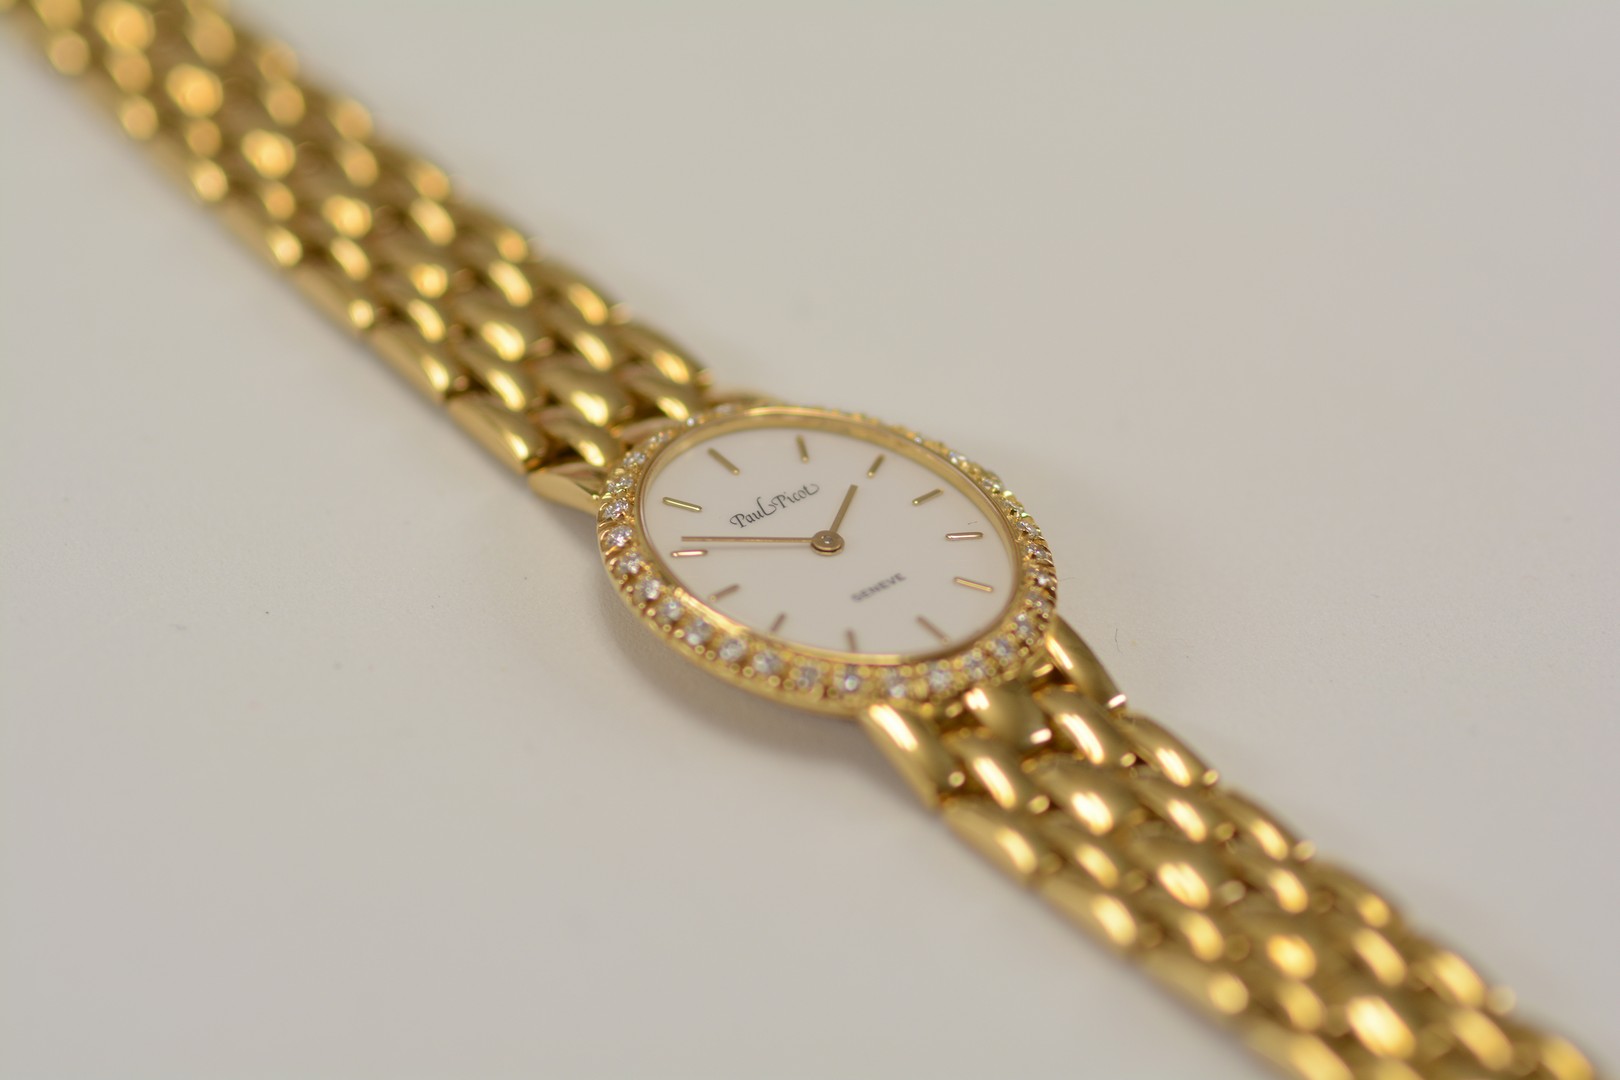 Paul Picot / Diamond - Lady's Yellow gold Wrist Watch - Image 13 of 16